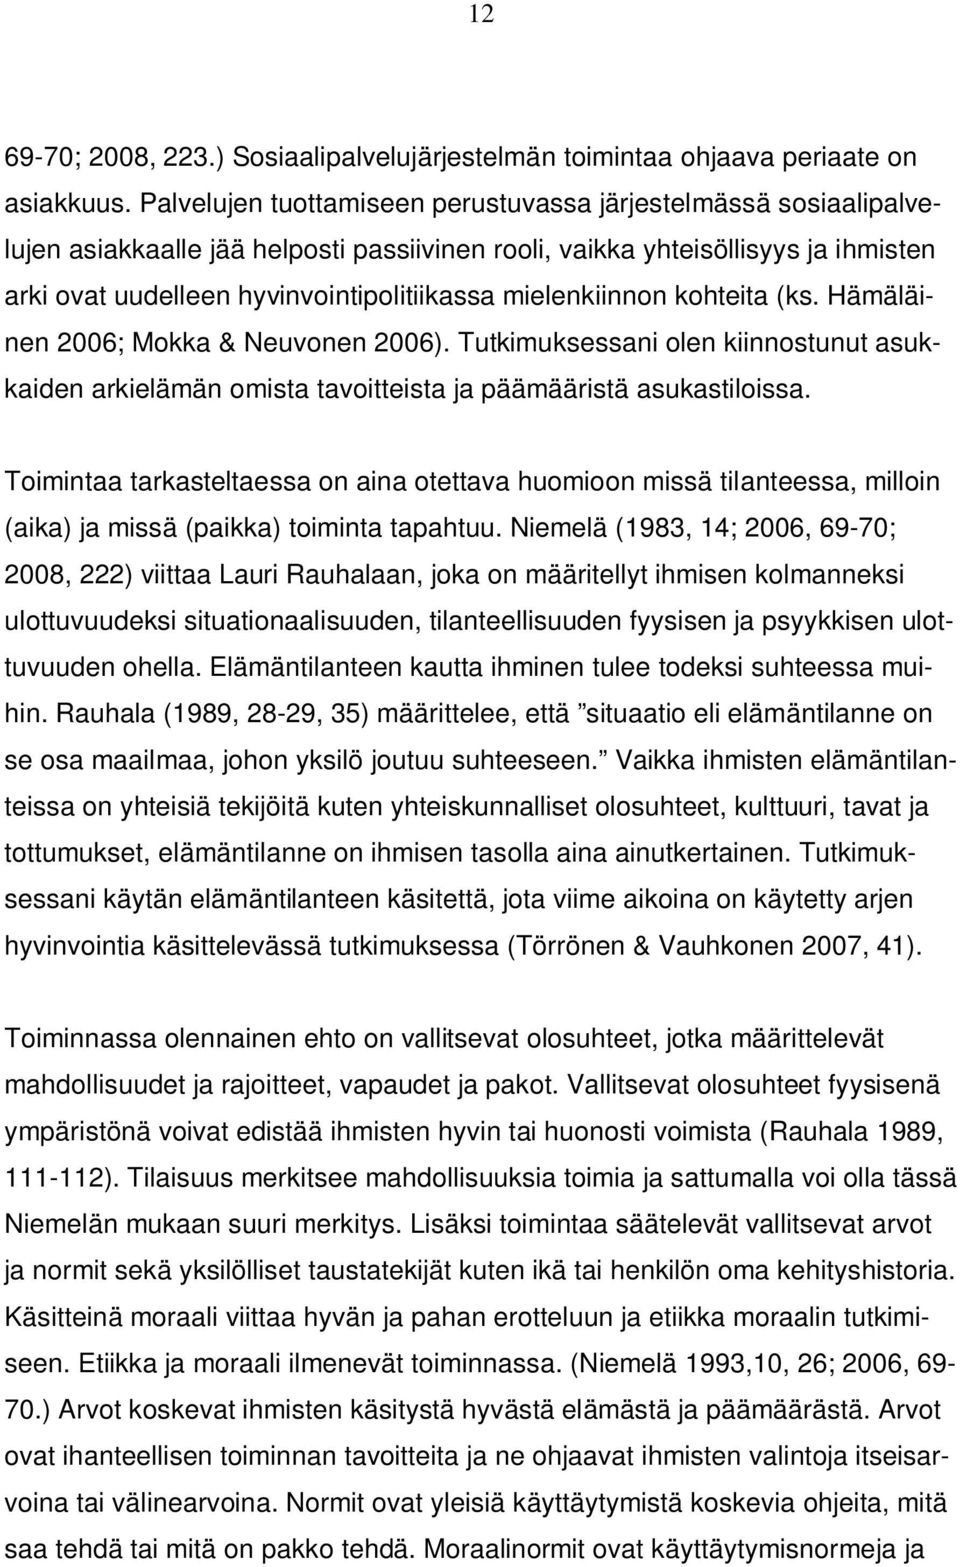 mielenkiinnon kohteita (ks. Hämäläinen 2006; Mokka & Neuvonen 2006). Tutkimuksessani olen kiinnostunut asukkaiden arkielämän omista tavoitteista ja päämääristä asukastiloissa.